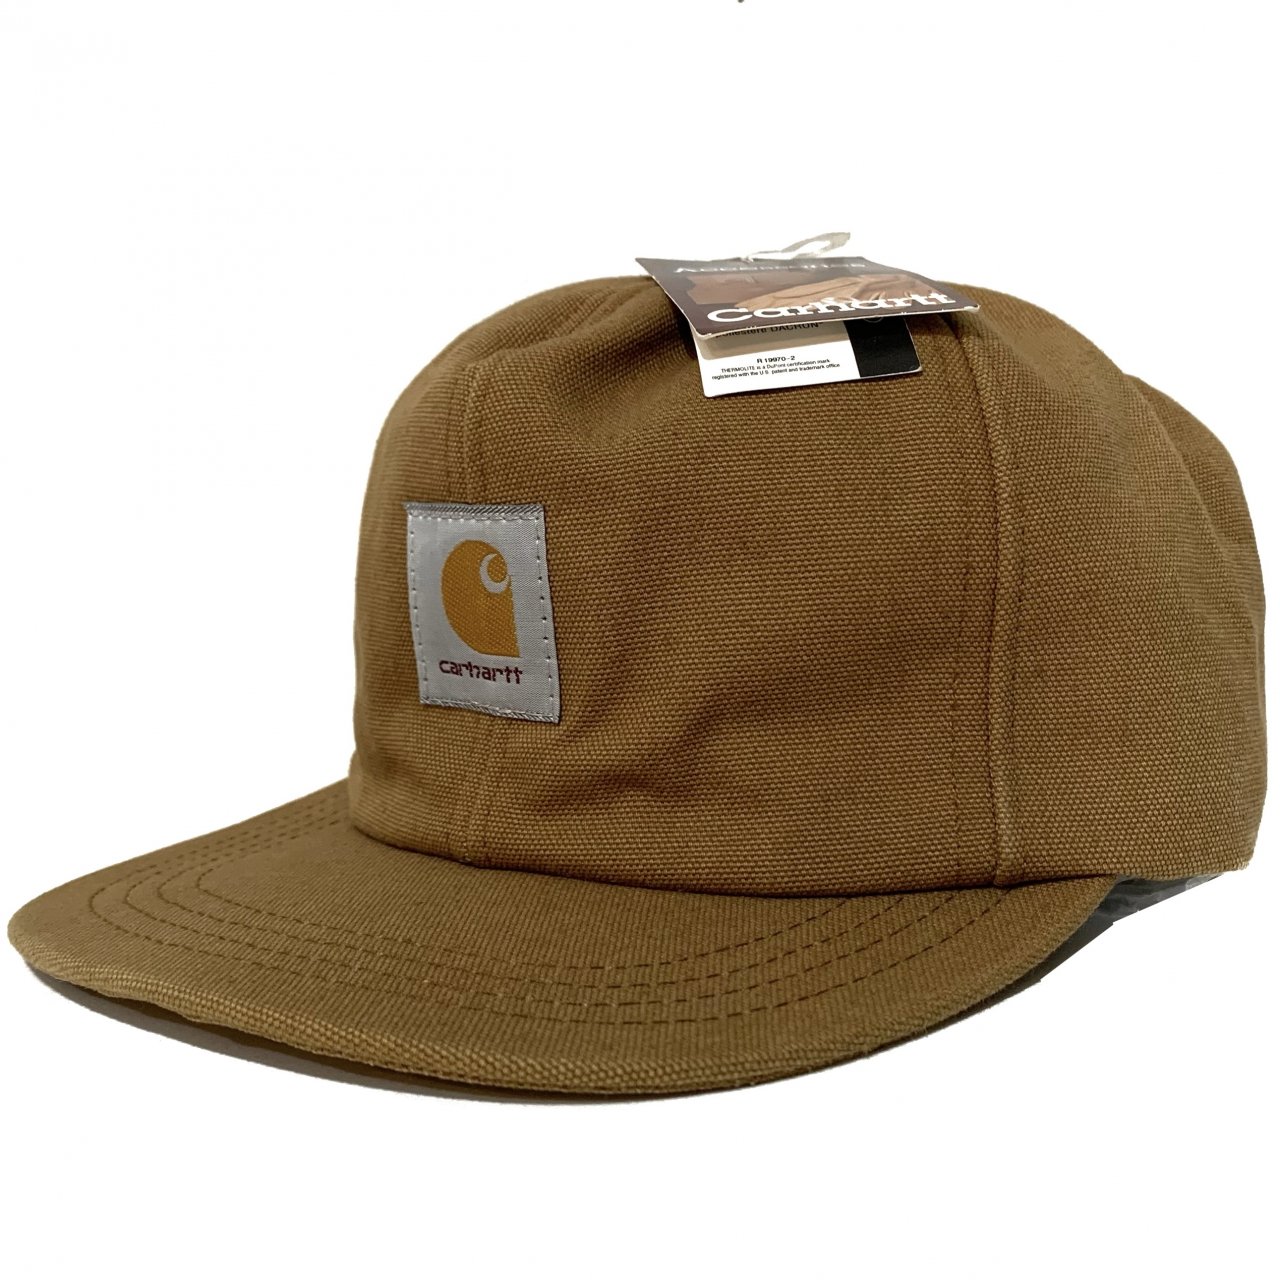 USA製 デッドストック カーハート キャップ 帽子 - キャップ